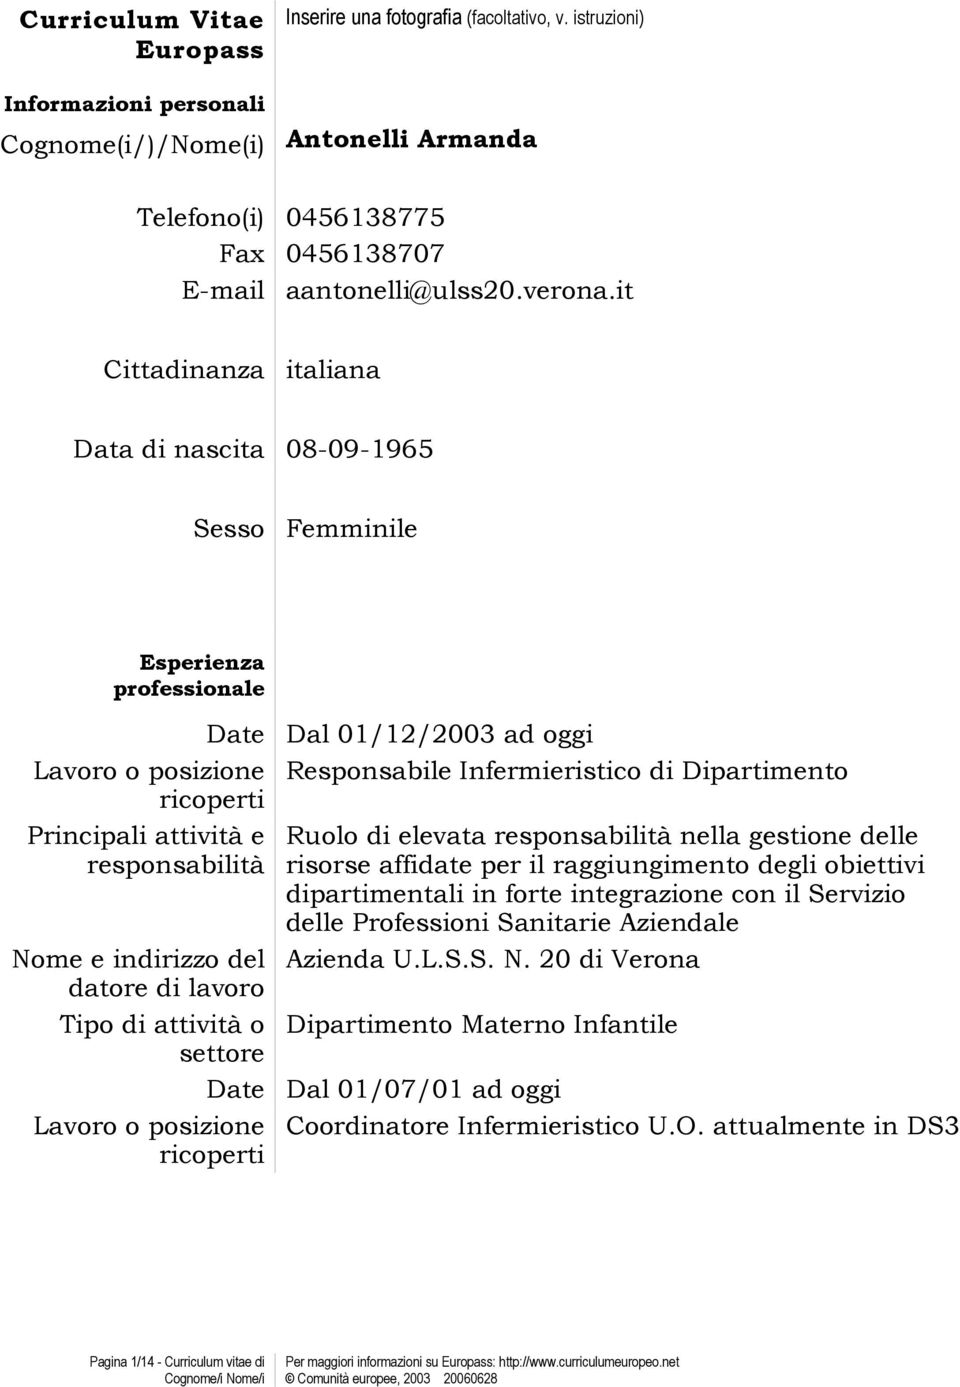 it Cittadinanza italiana Data di nascita 08-09-1965 Sesso Femminile Esperienza professionale Date Dal 01/12/2003 ad oggi Lavoro o posizione Responsabile Infermieristico di Dipartimento ricoperti